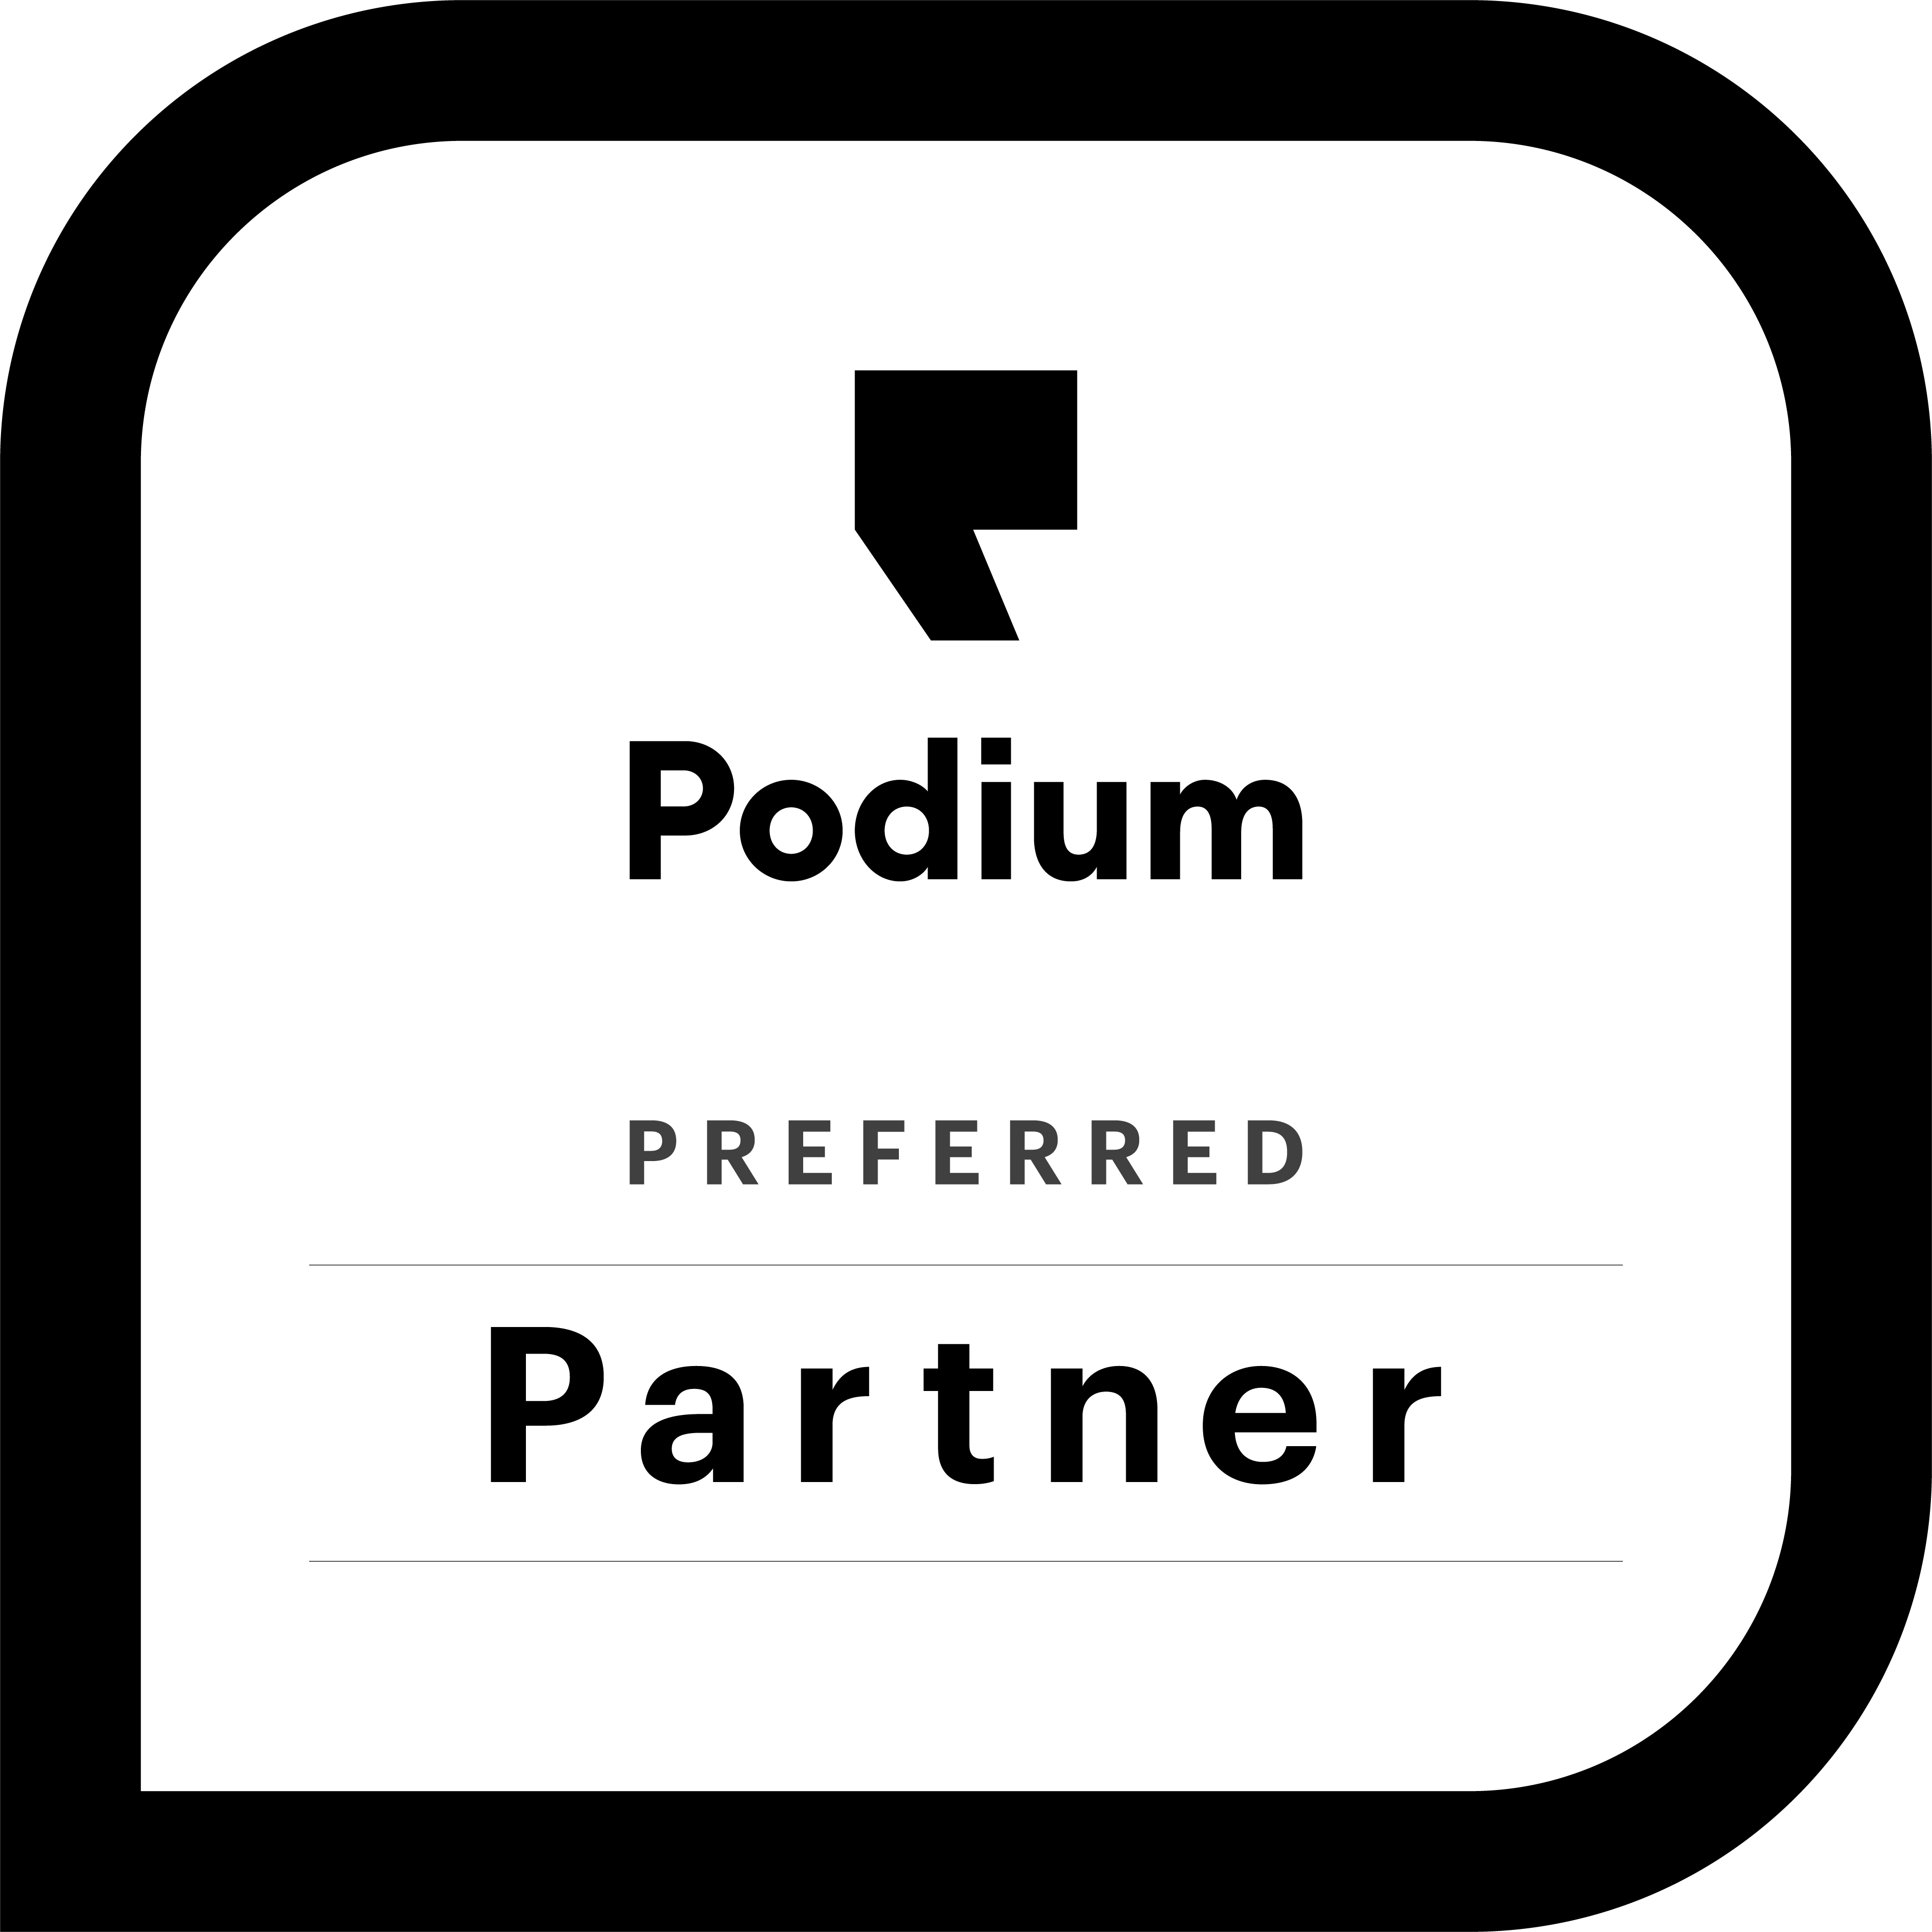 Podium Partner